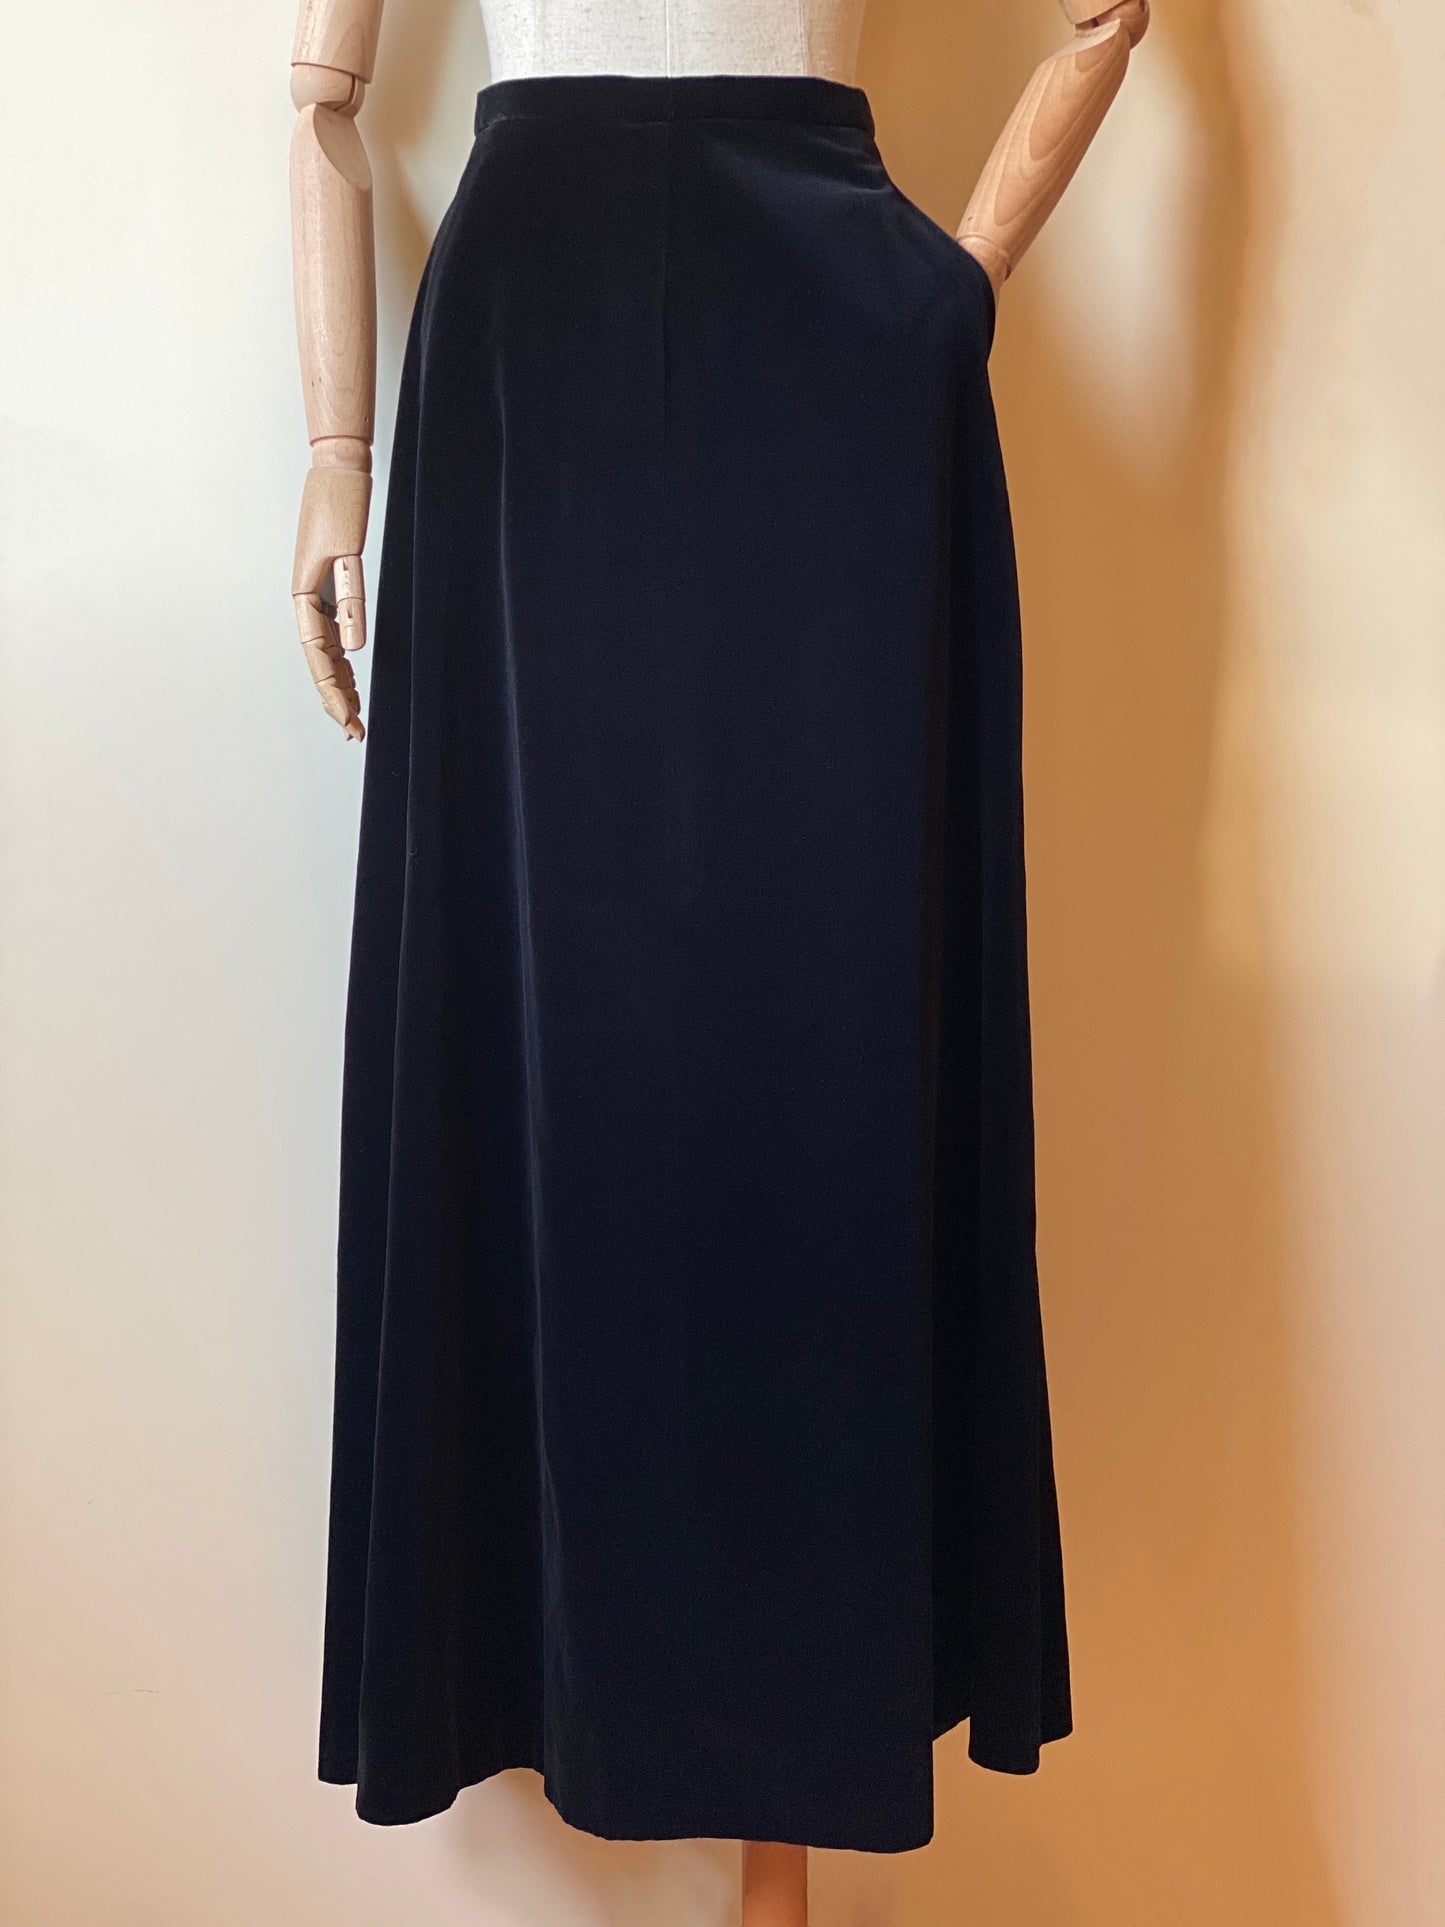 Vintage Handmade Long Black Velvet Skirt